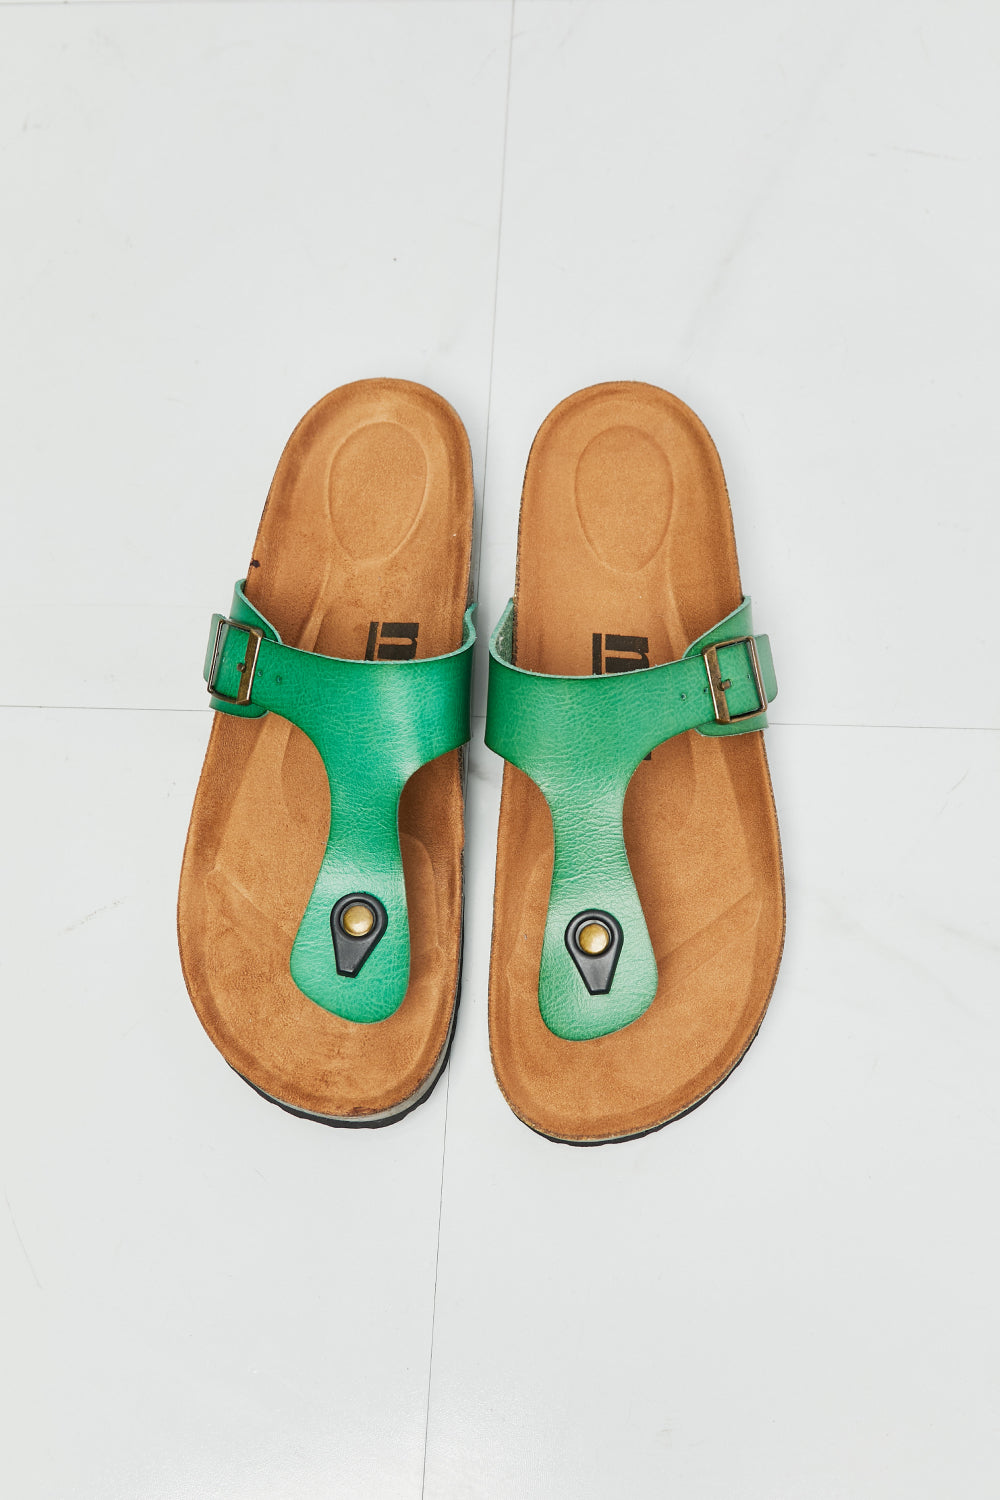 MMShoes Drift Away T-Strap Flip-Flop in Green - Shop women apparel, Jewelry, bath & beauty products online - Arwen's Boutique